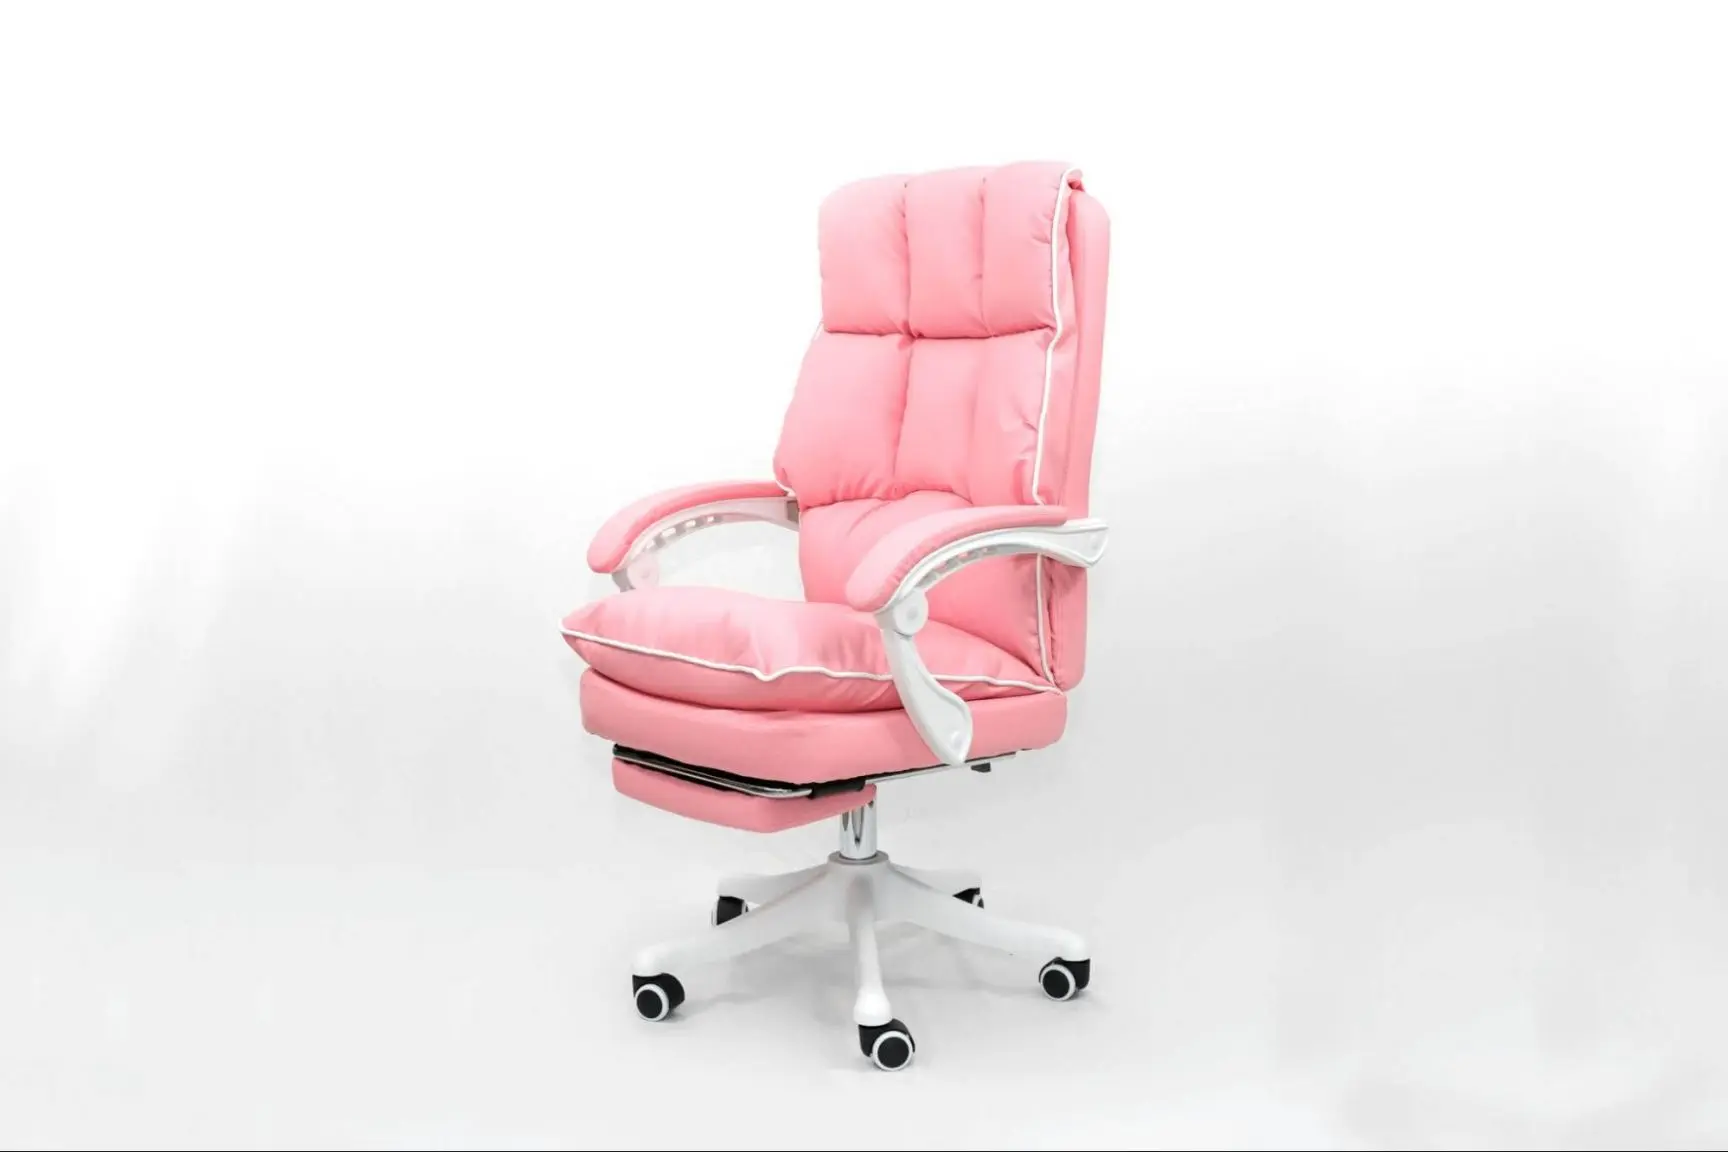 Màu hồng của ghế tạo sự ấn tượng và tô điểm cho văn phòng của bạn